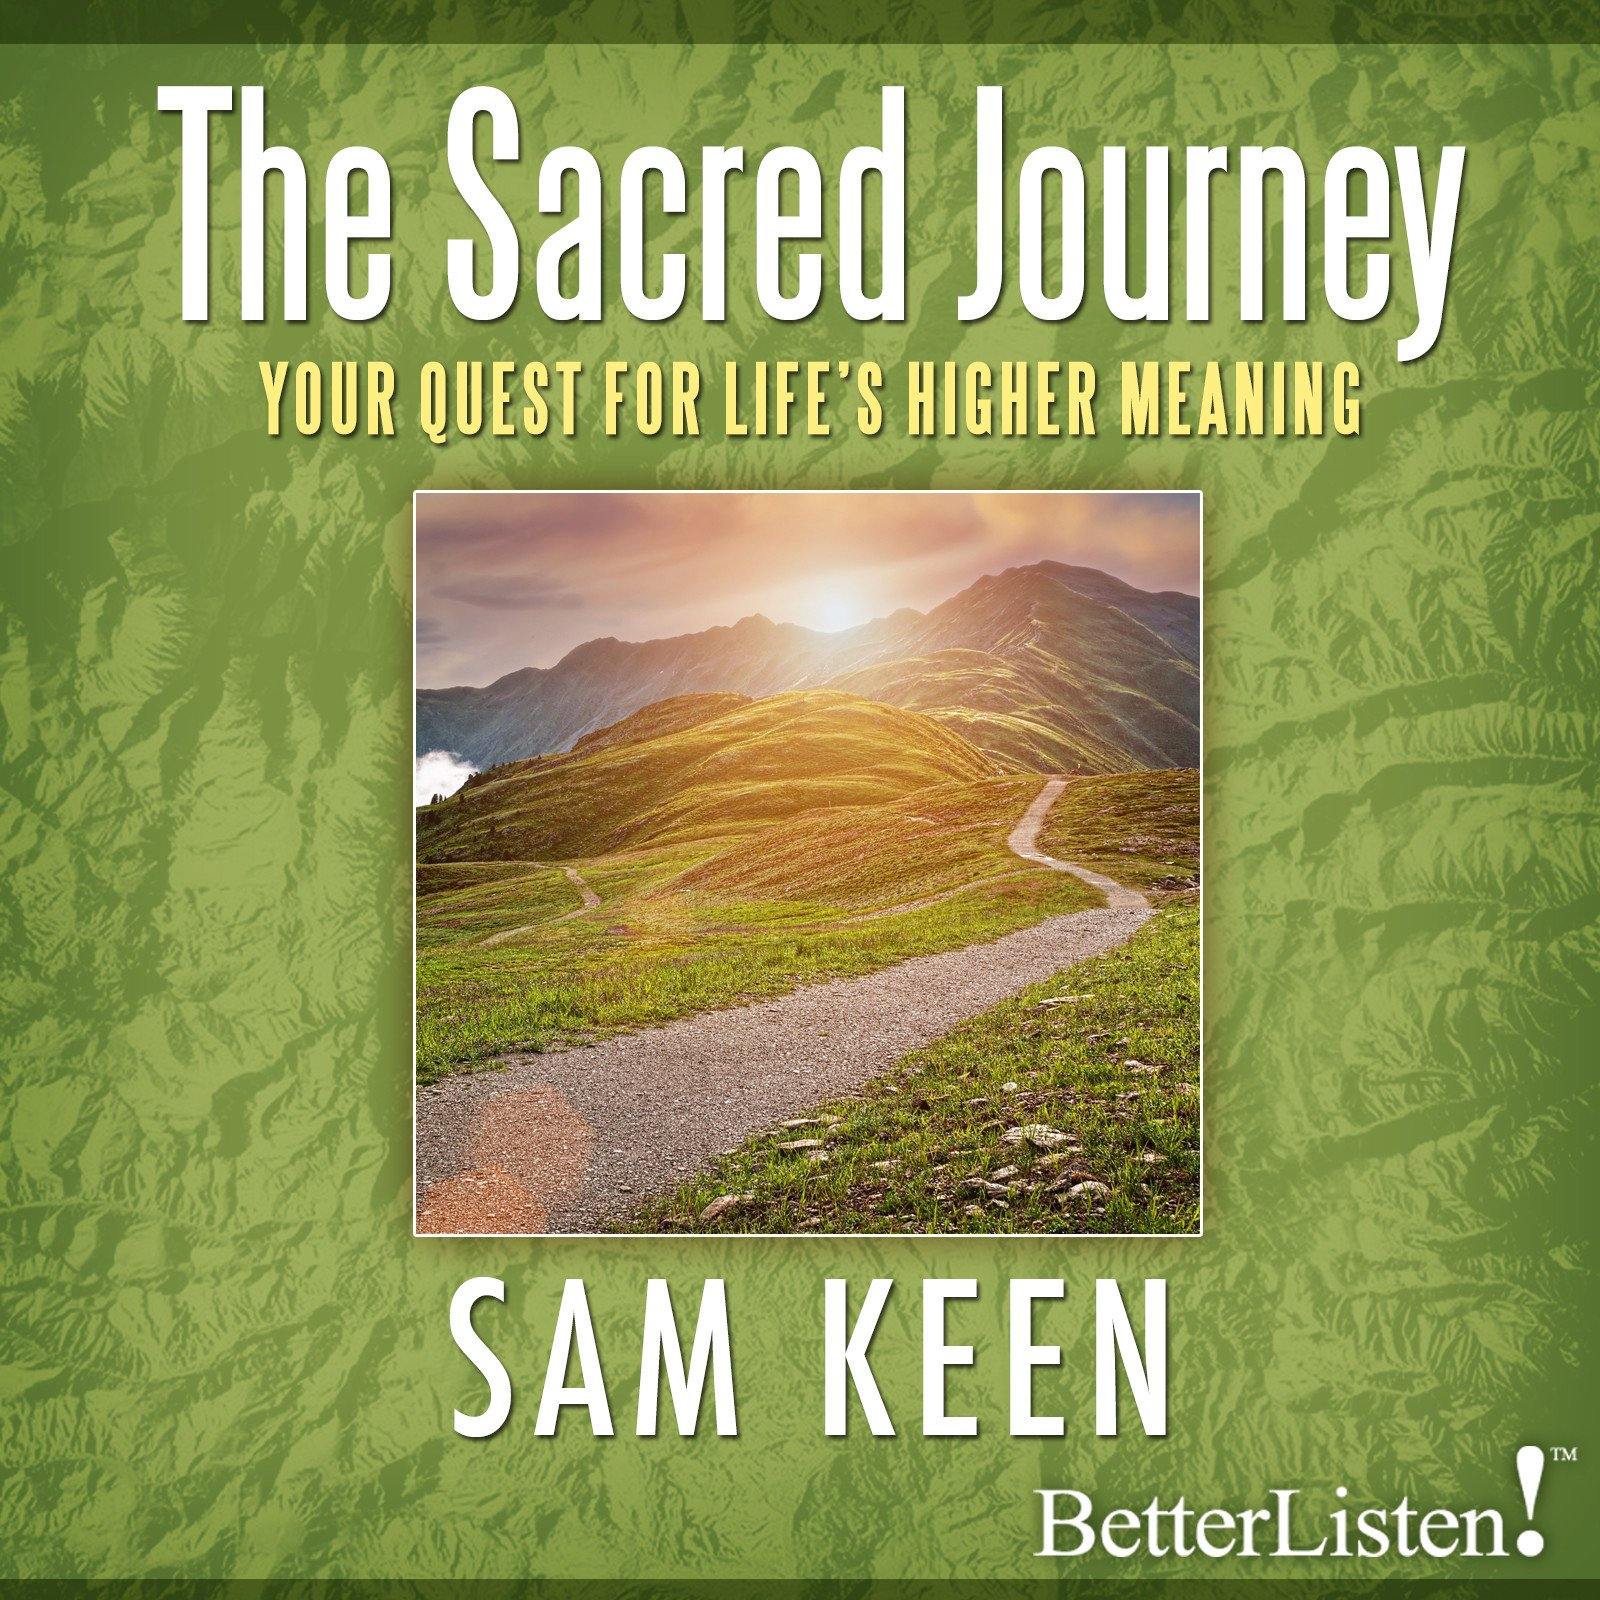 The Sacred Journey with Sam Keen Audio Program Sam Keen - BetterListen!